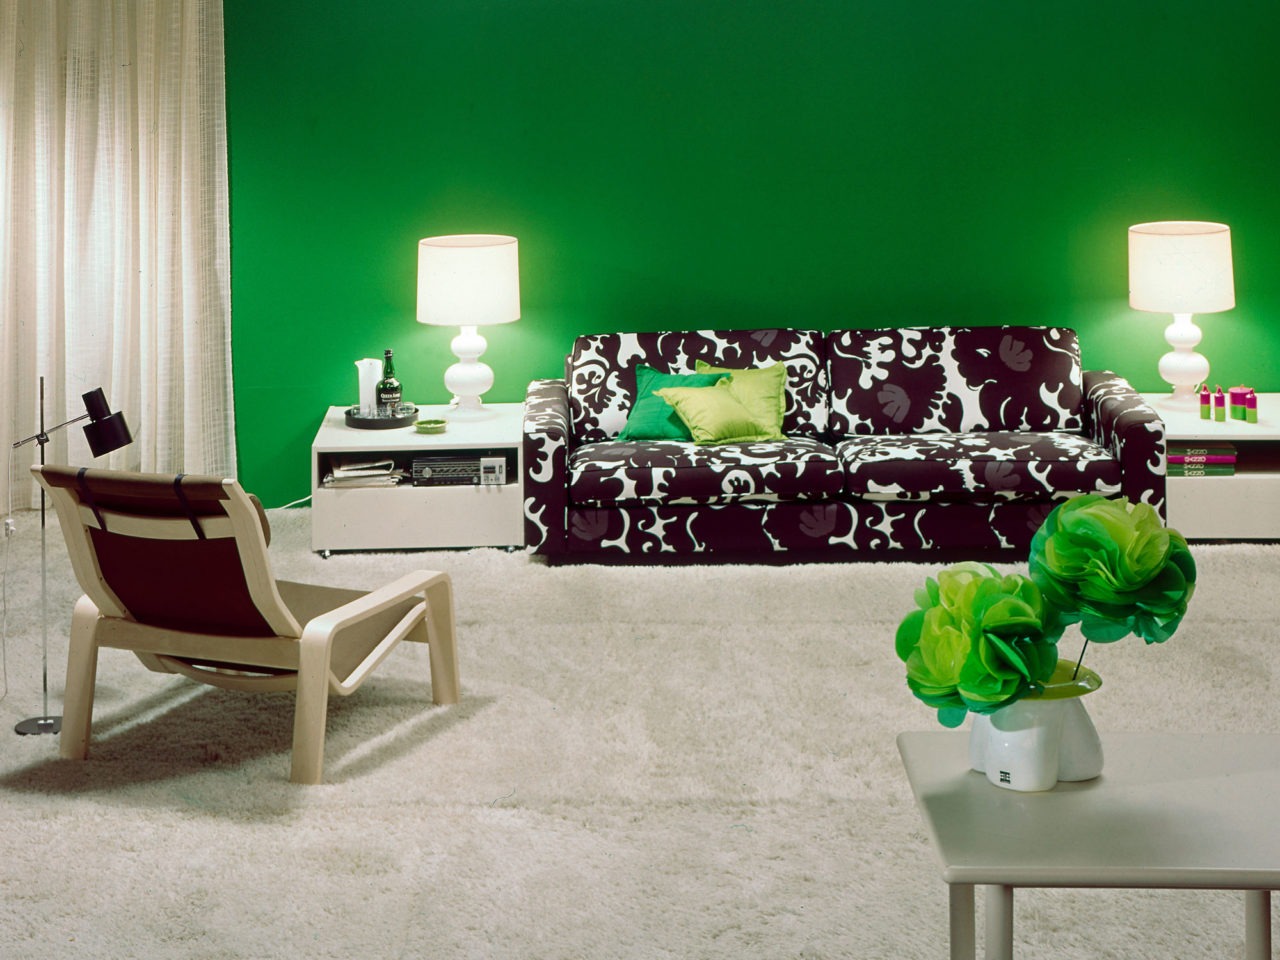 Schwarz-weiß gemustertes MIX Sofa auf Teppichboden. Weiße Dekoobjekte und eine Wand in leuchtendem Grün.